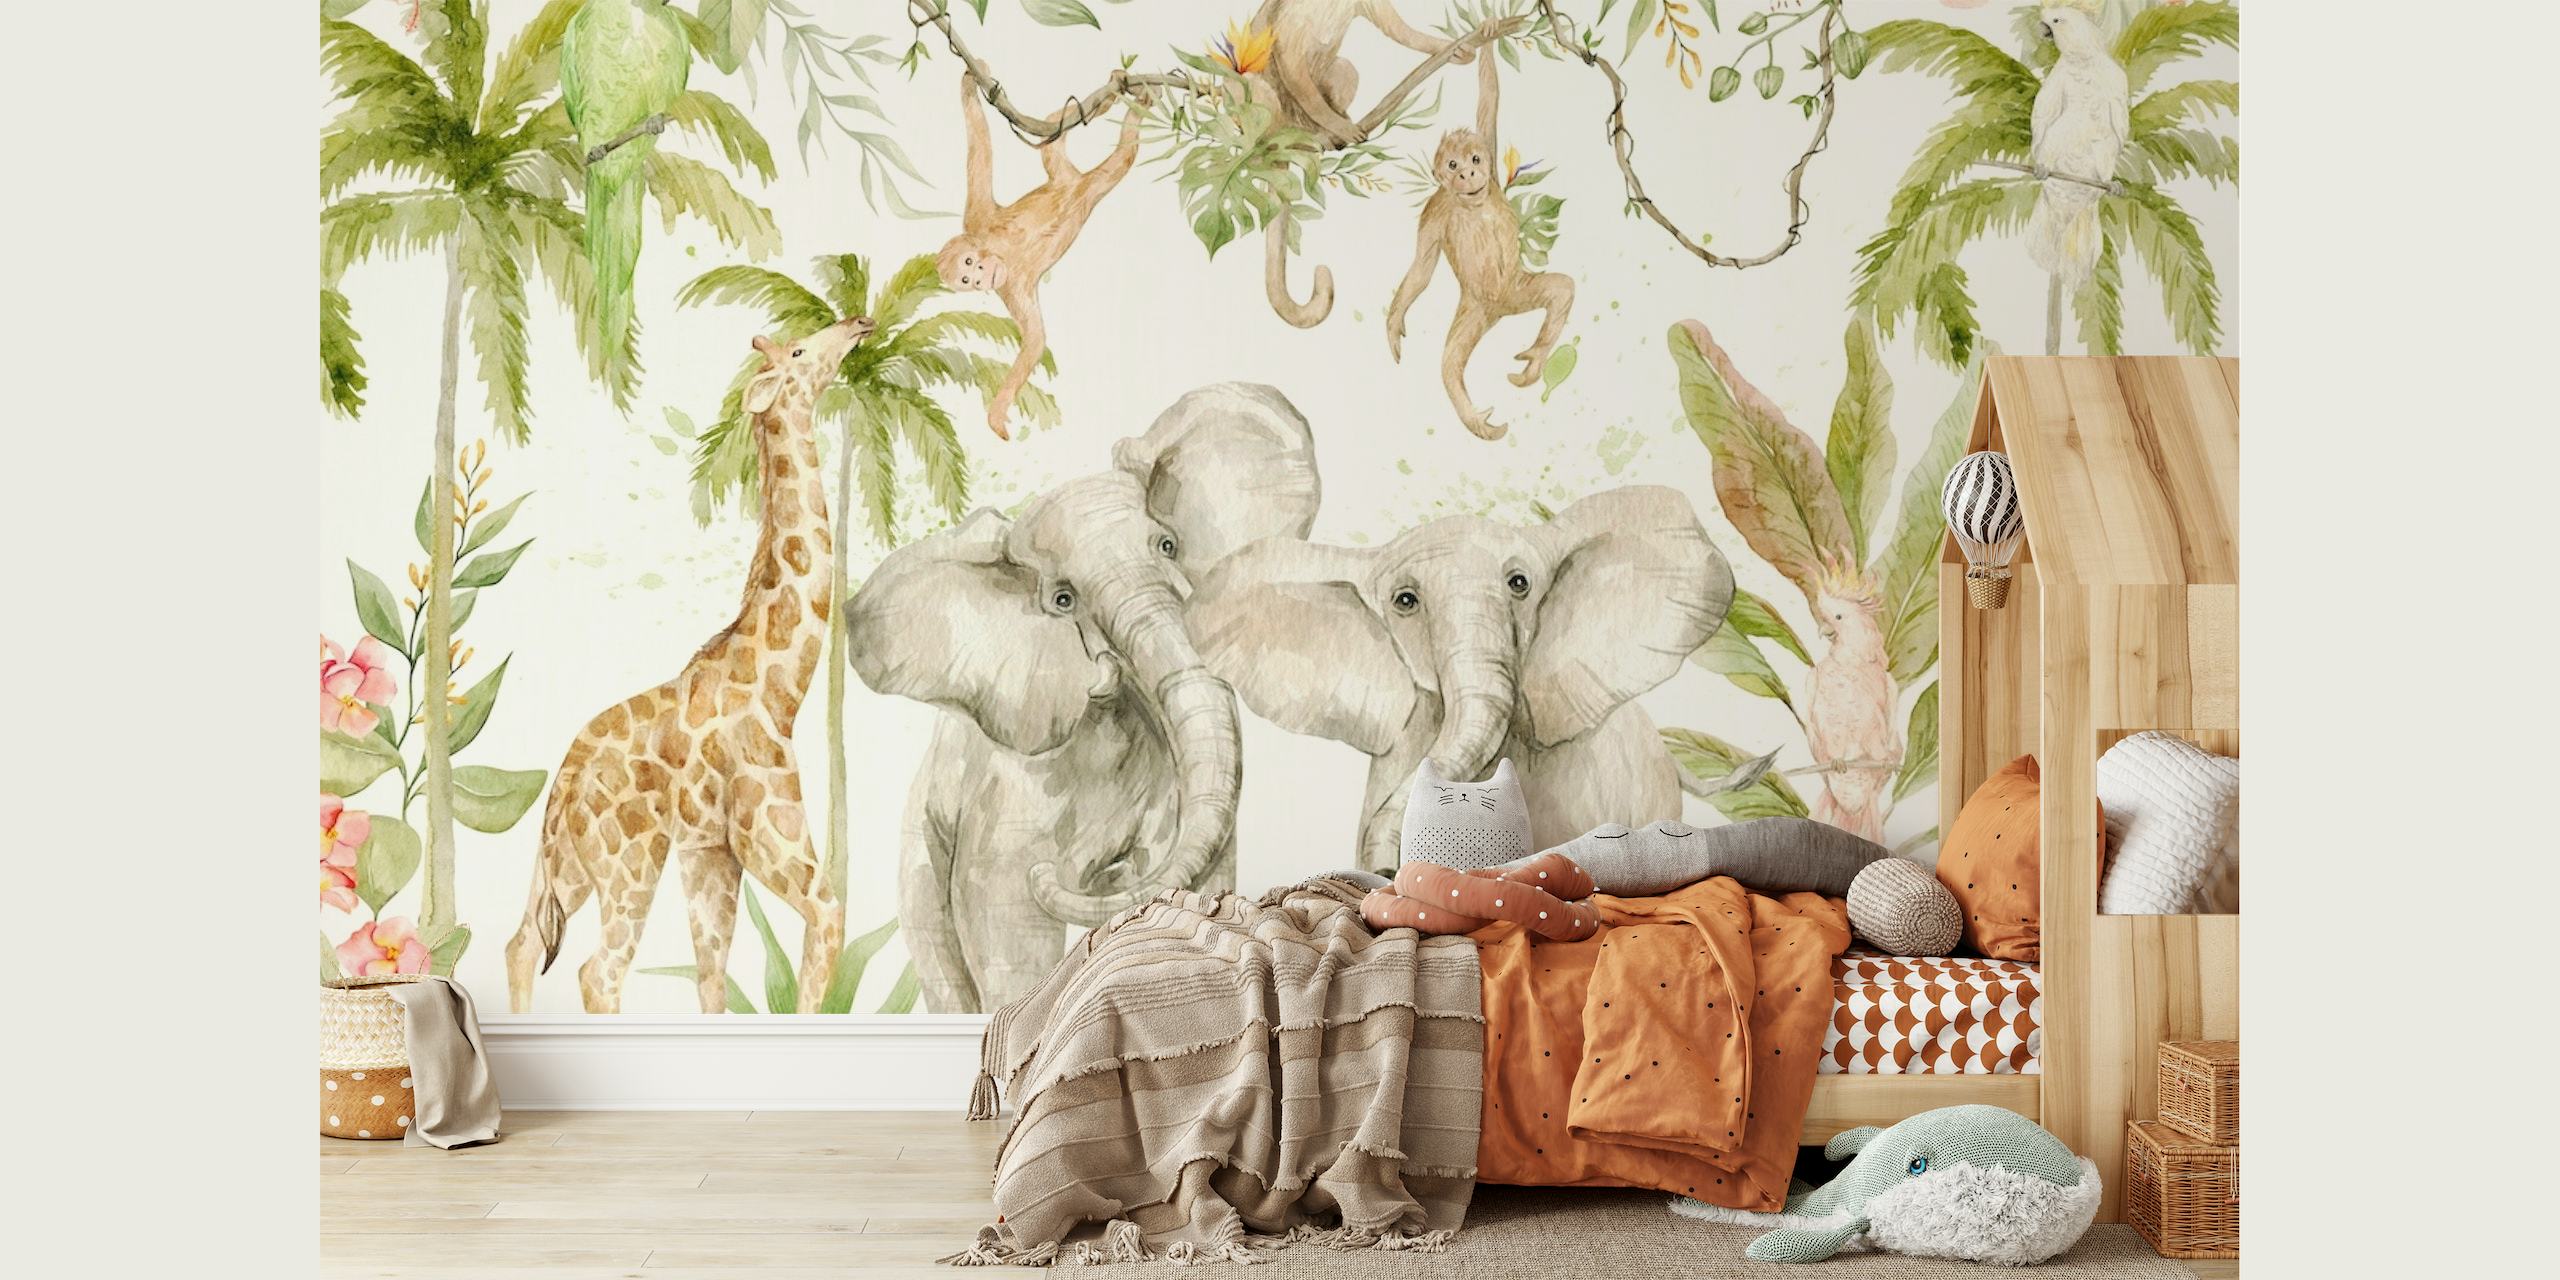 Mural de parede estilo pintado à mão de uma cena de selva de safári tropical com elefantes, girafas e macacos entre vegetação